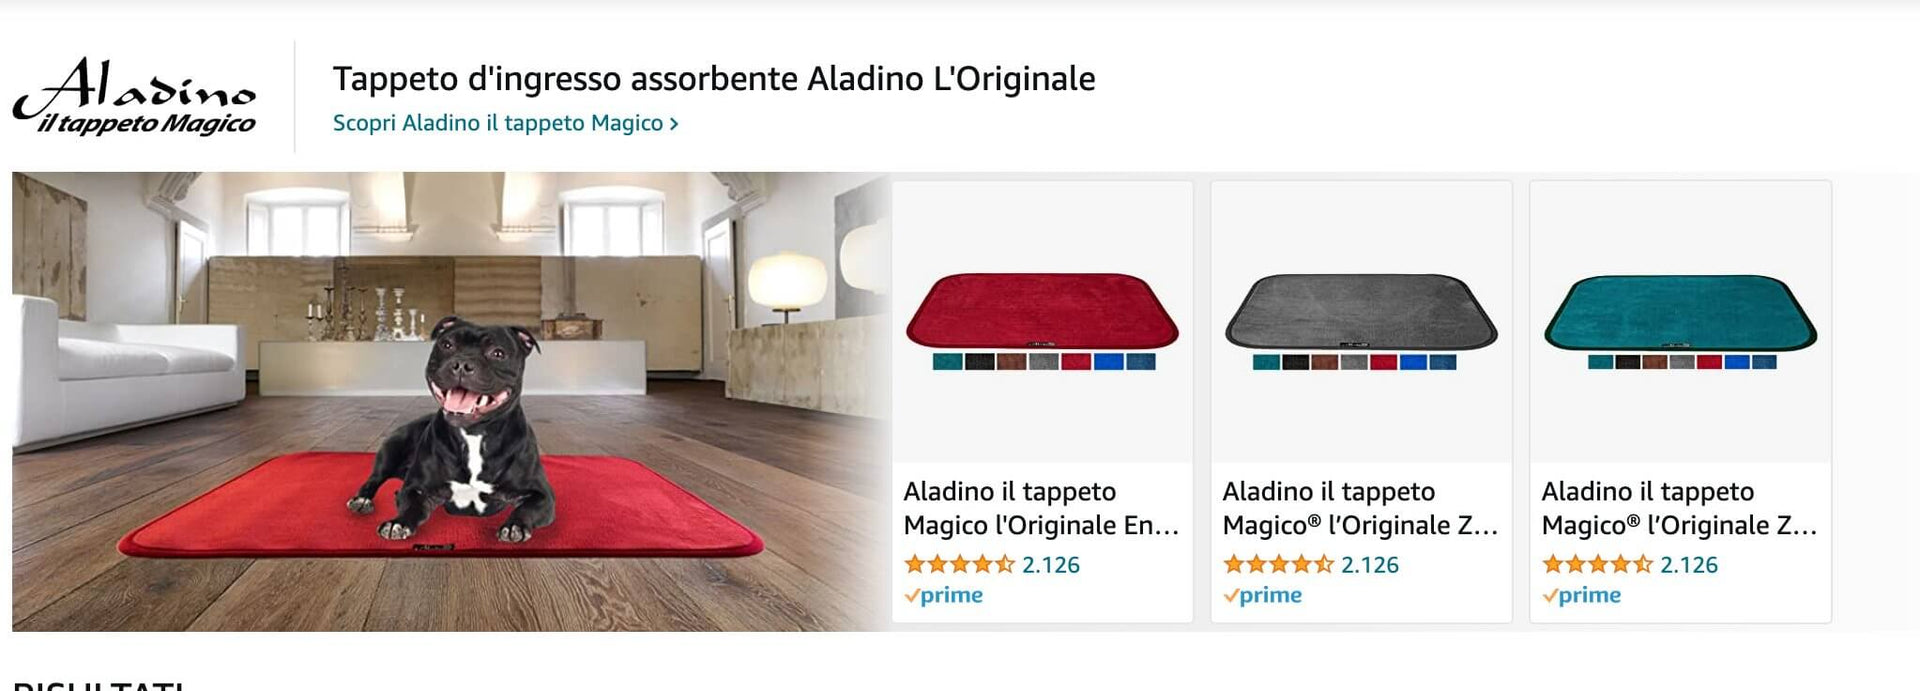 Aladino il Tappeto Magico - Best Seller in Italia e Francia